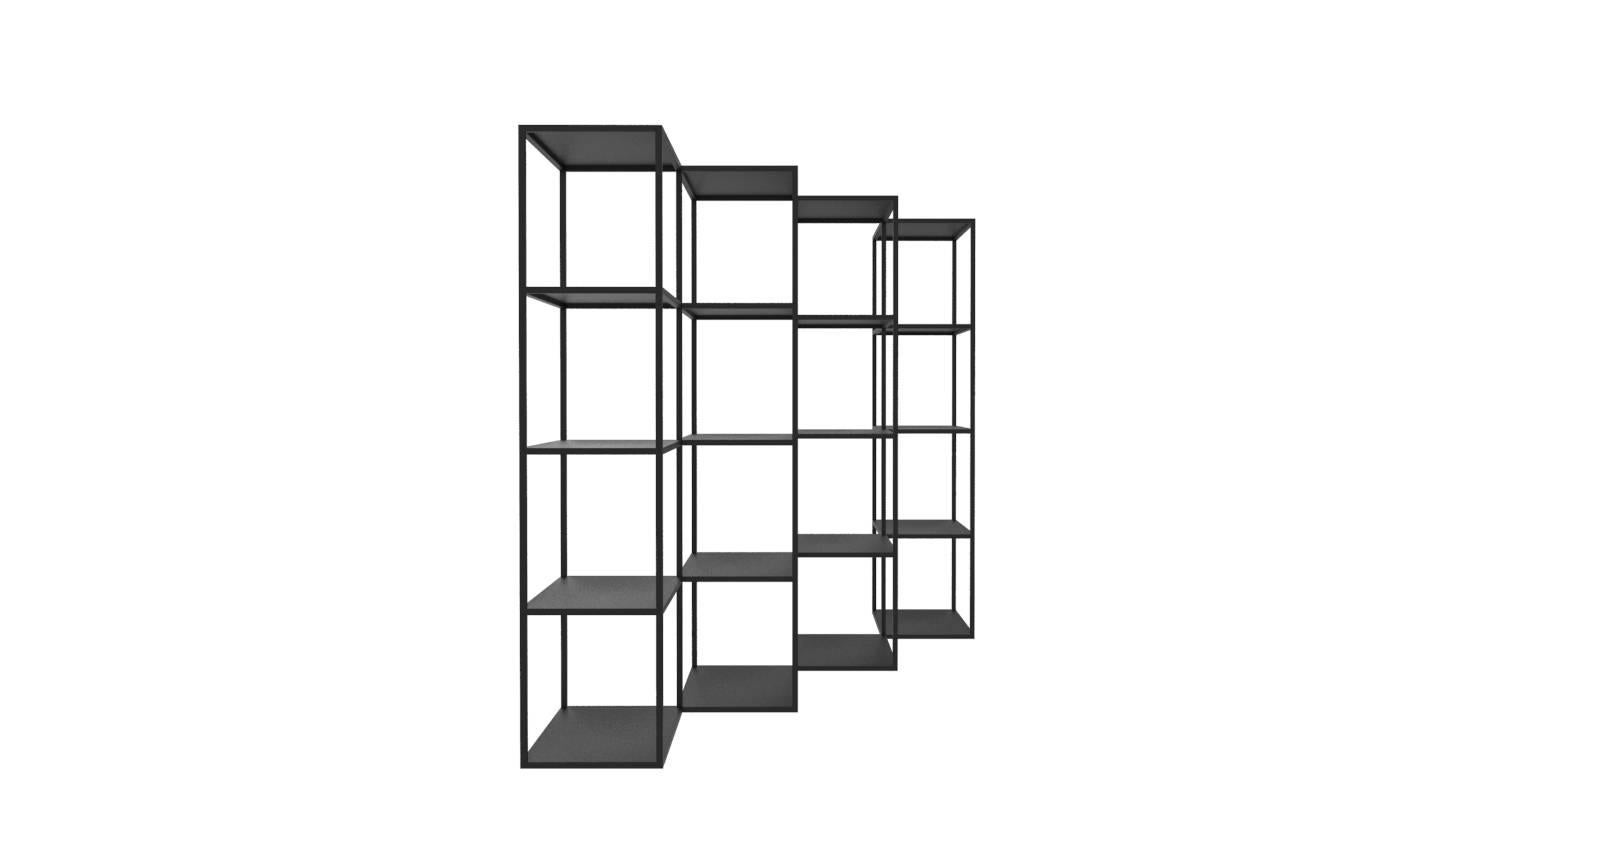 Dieses modulare System, das als minimalistisches und zeitgenössisches Bücherregal konzipiert wurde, um die Wandfläche zu unterbrechen, ist vielseitig einsetzbar als moderner Raumteiler sowie als Hintergrund für jeden Raum, sei es ein Wohn- oder